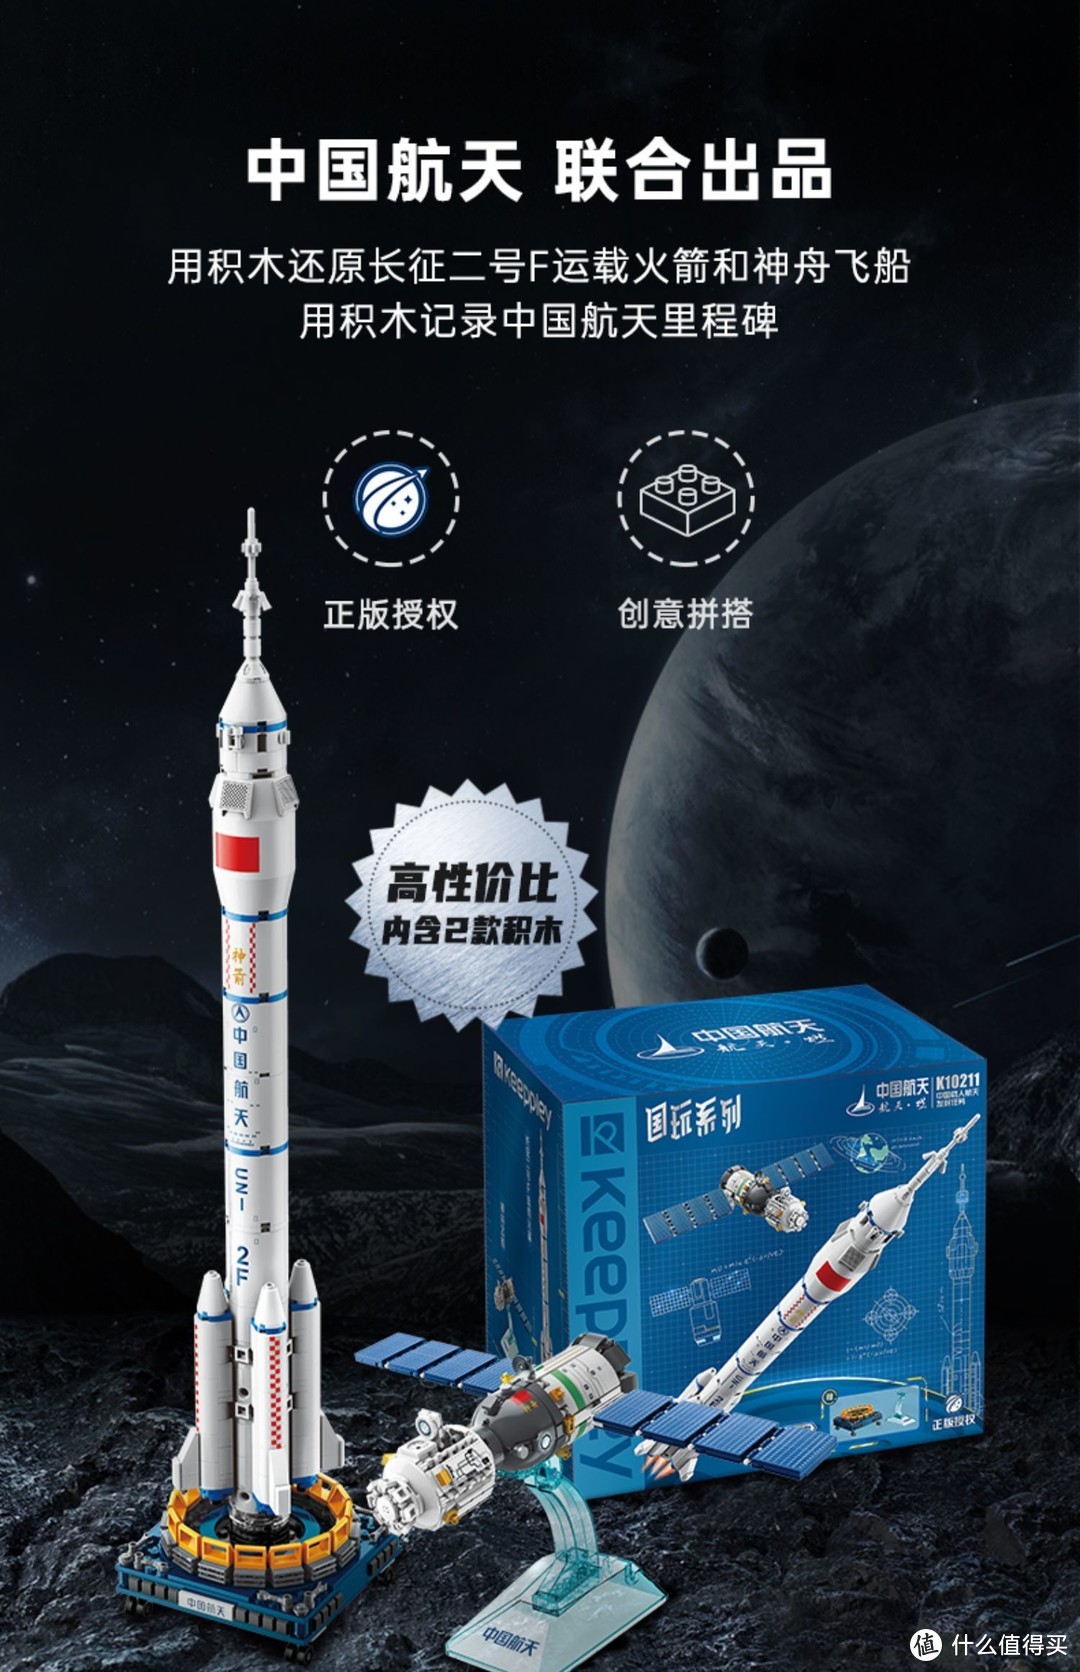 keeppley国玩系列积木中国载人航天长征二号火箭套装拼装玩具模型